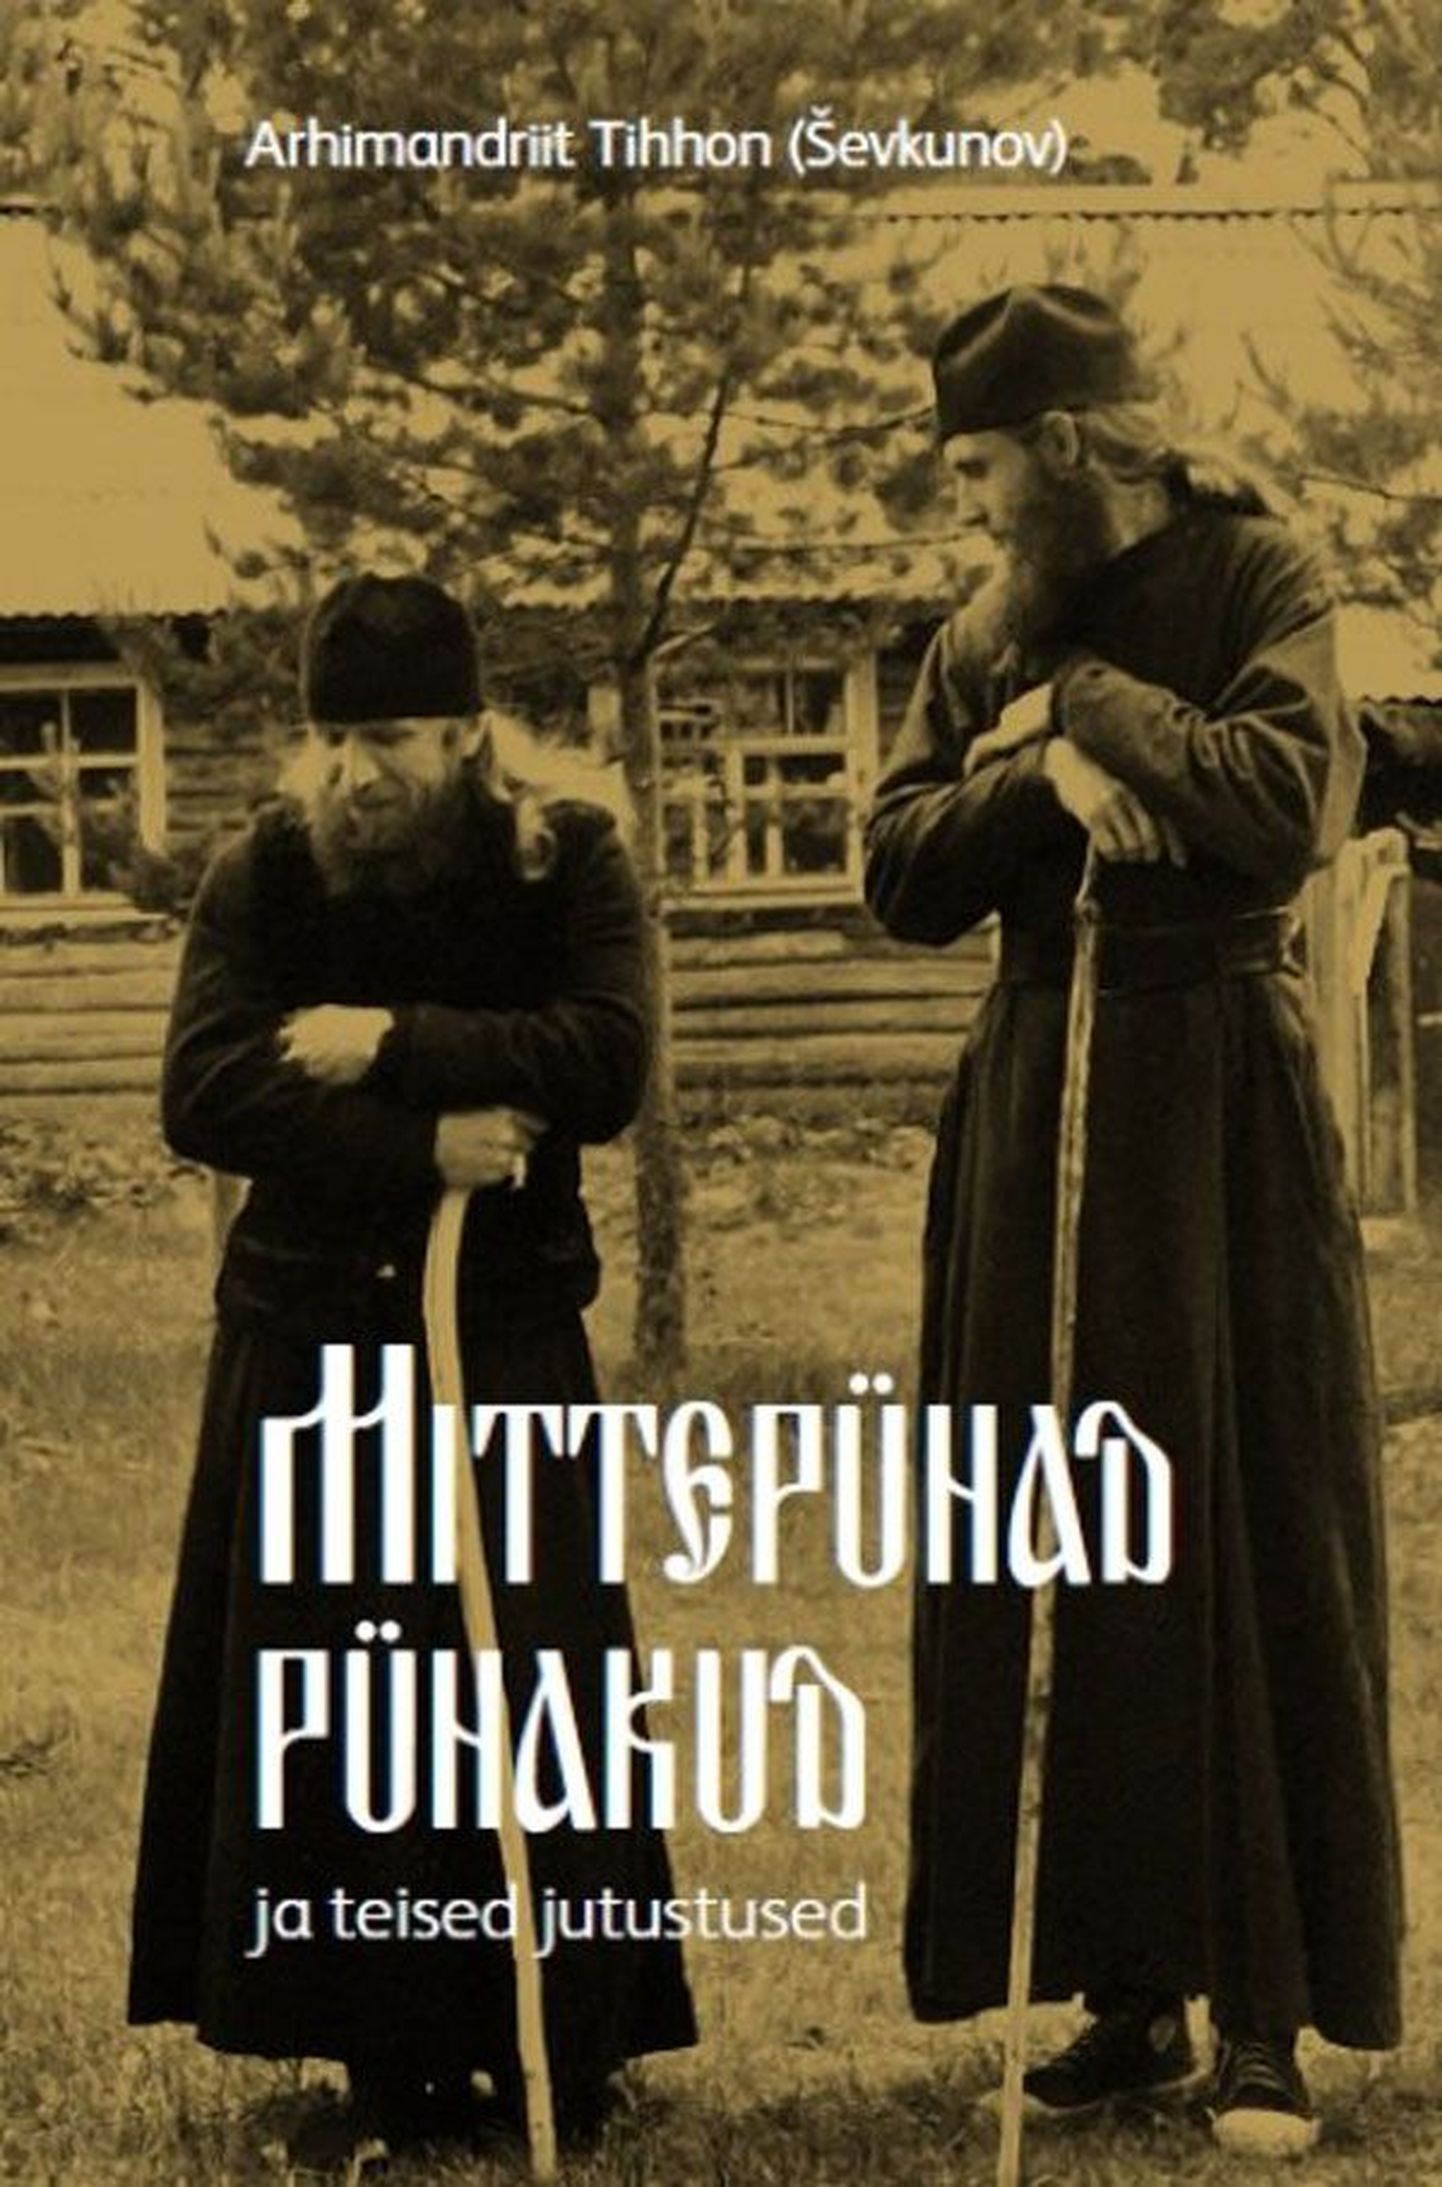 Raamat
Arhimandriit Tihhon
«Mittepühad pühakud ja teised jutustused»
Tõlkinud 
Ülar Lauk
Tänapäev 2013
416 lk